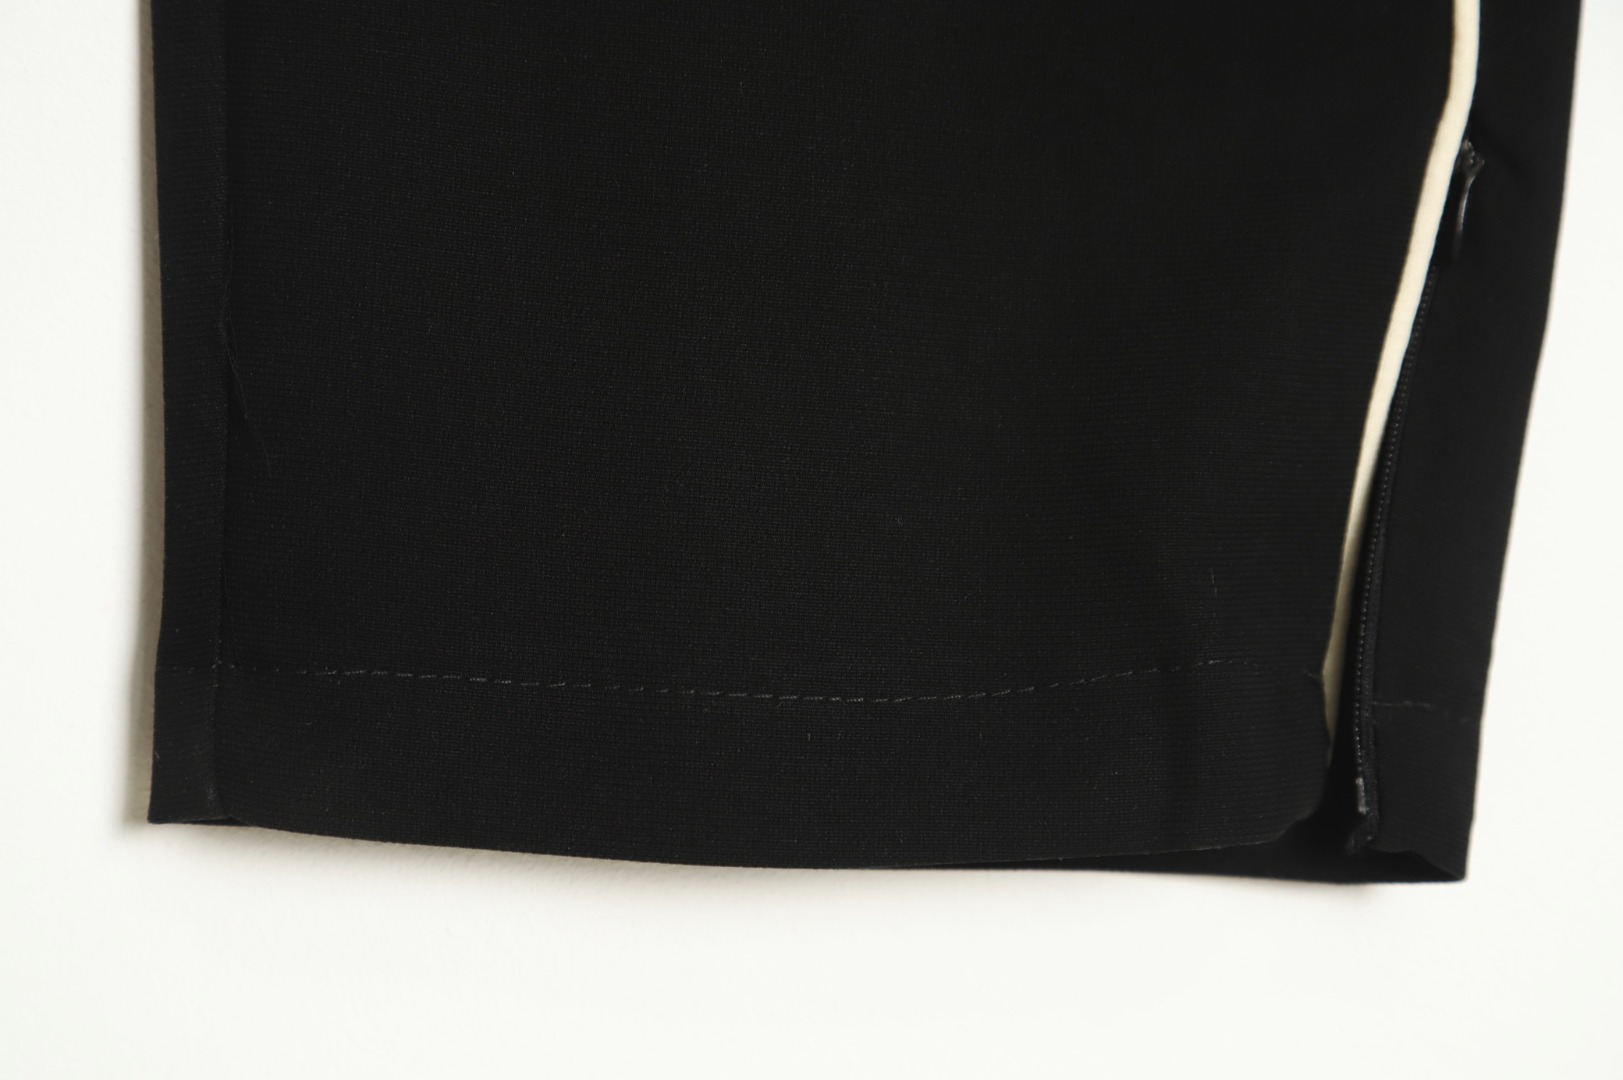 REPRESENT ズボン プレゼント ラッピングスーパーコピー カジュアルズボン HOT品質保証 パンツ 運動 人気もの ブラック_6